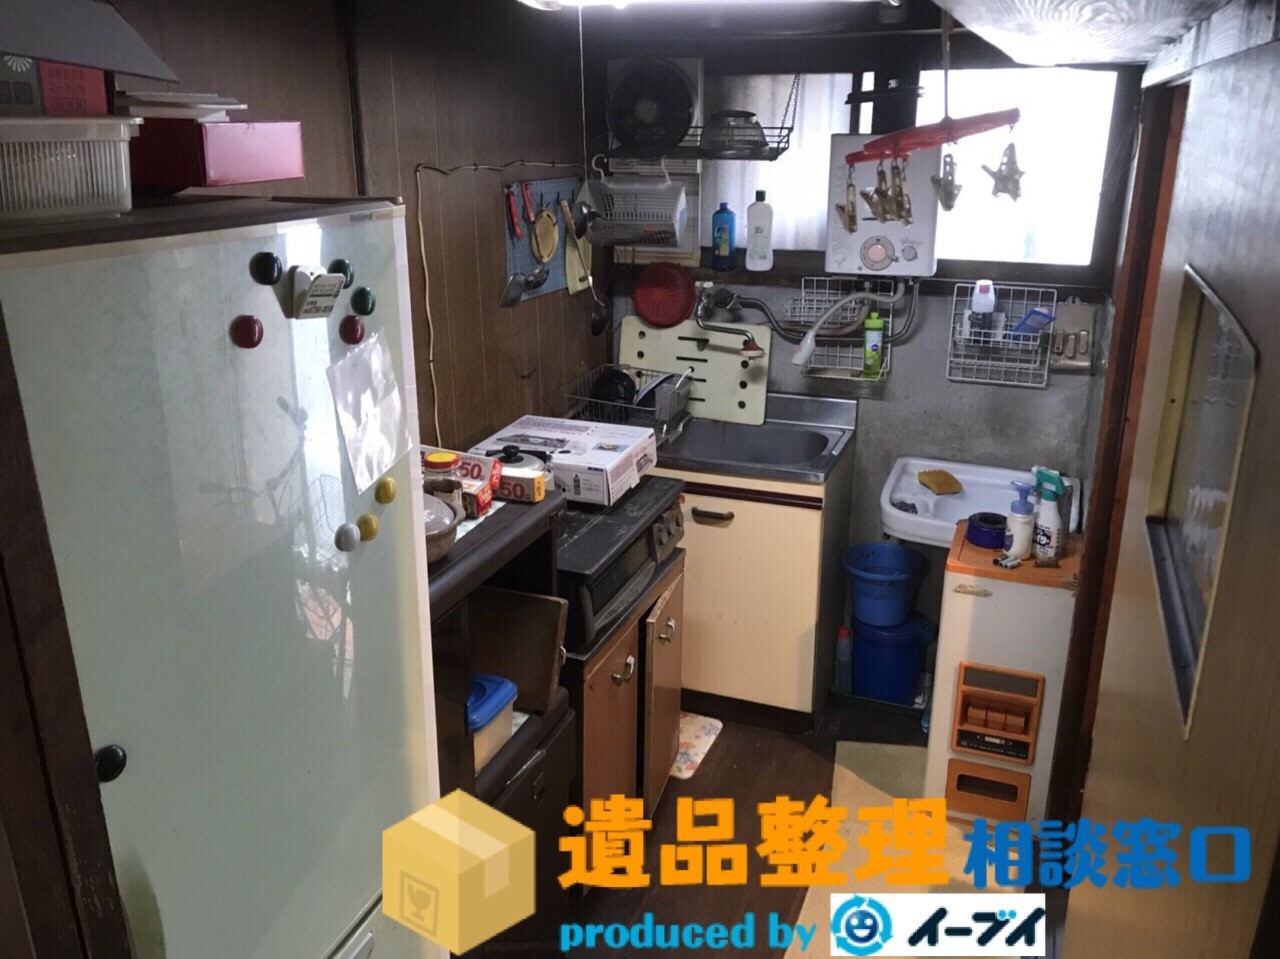 兵庫県芦屋市で遺品整理の作業で台所や玄関先の片付けをしました。のアイキャッチ